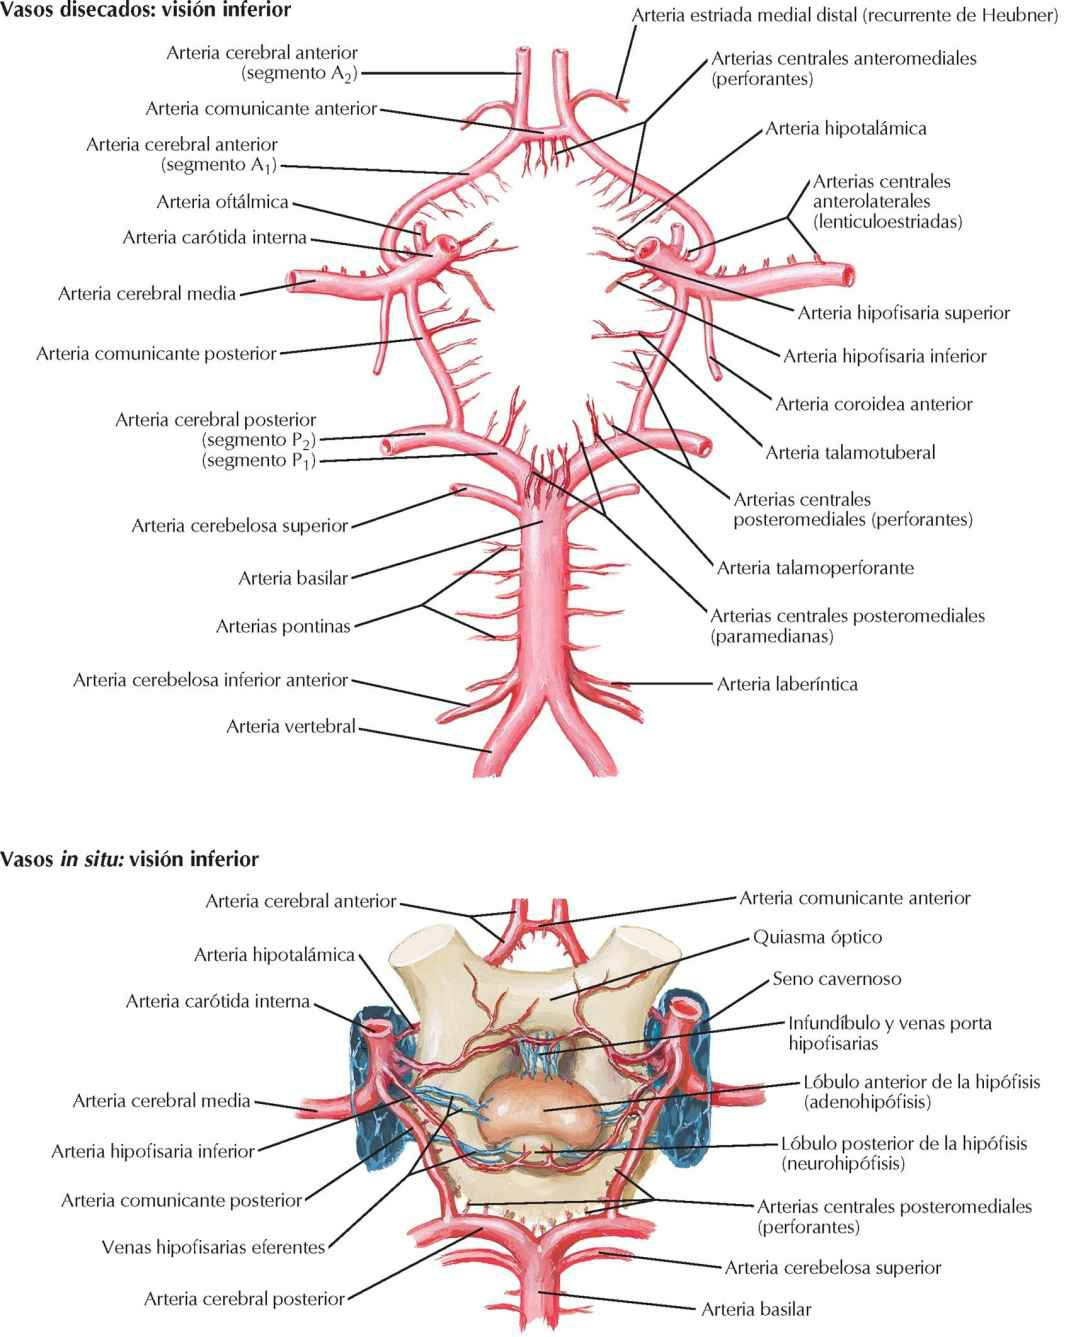 Círculo arterial cerebral (de Willis).